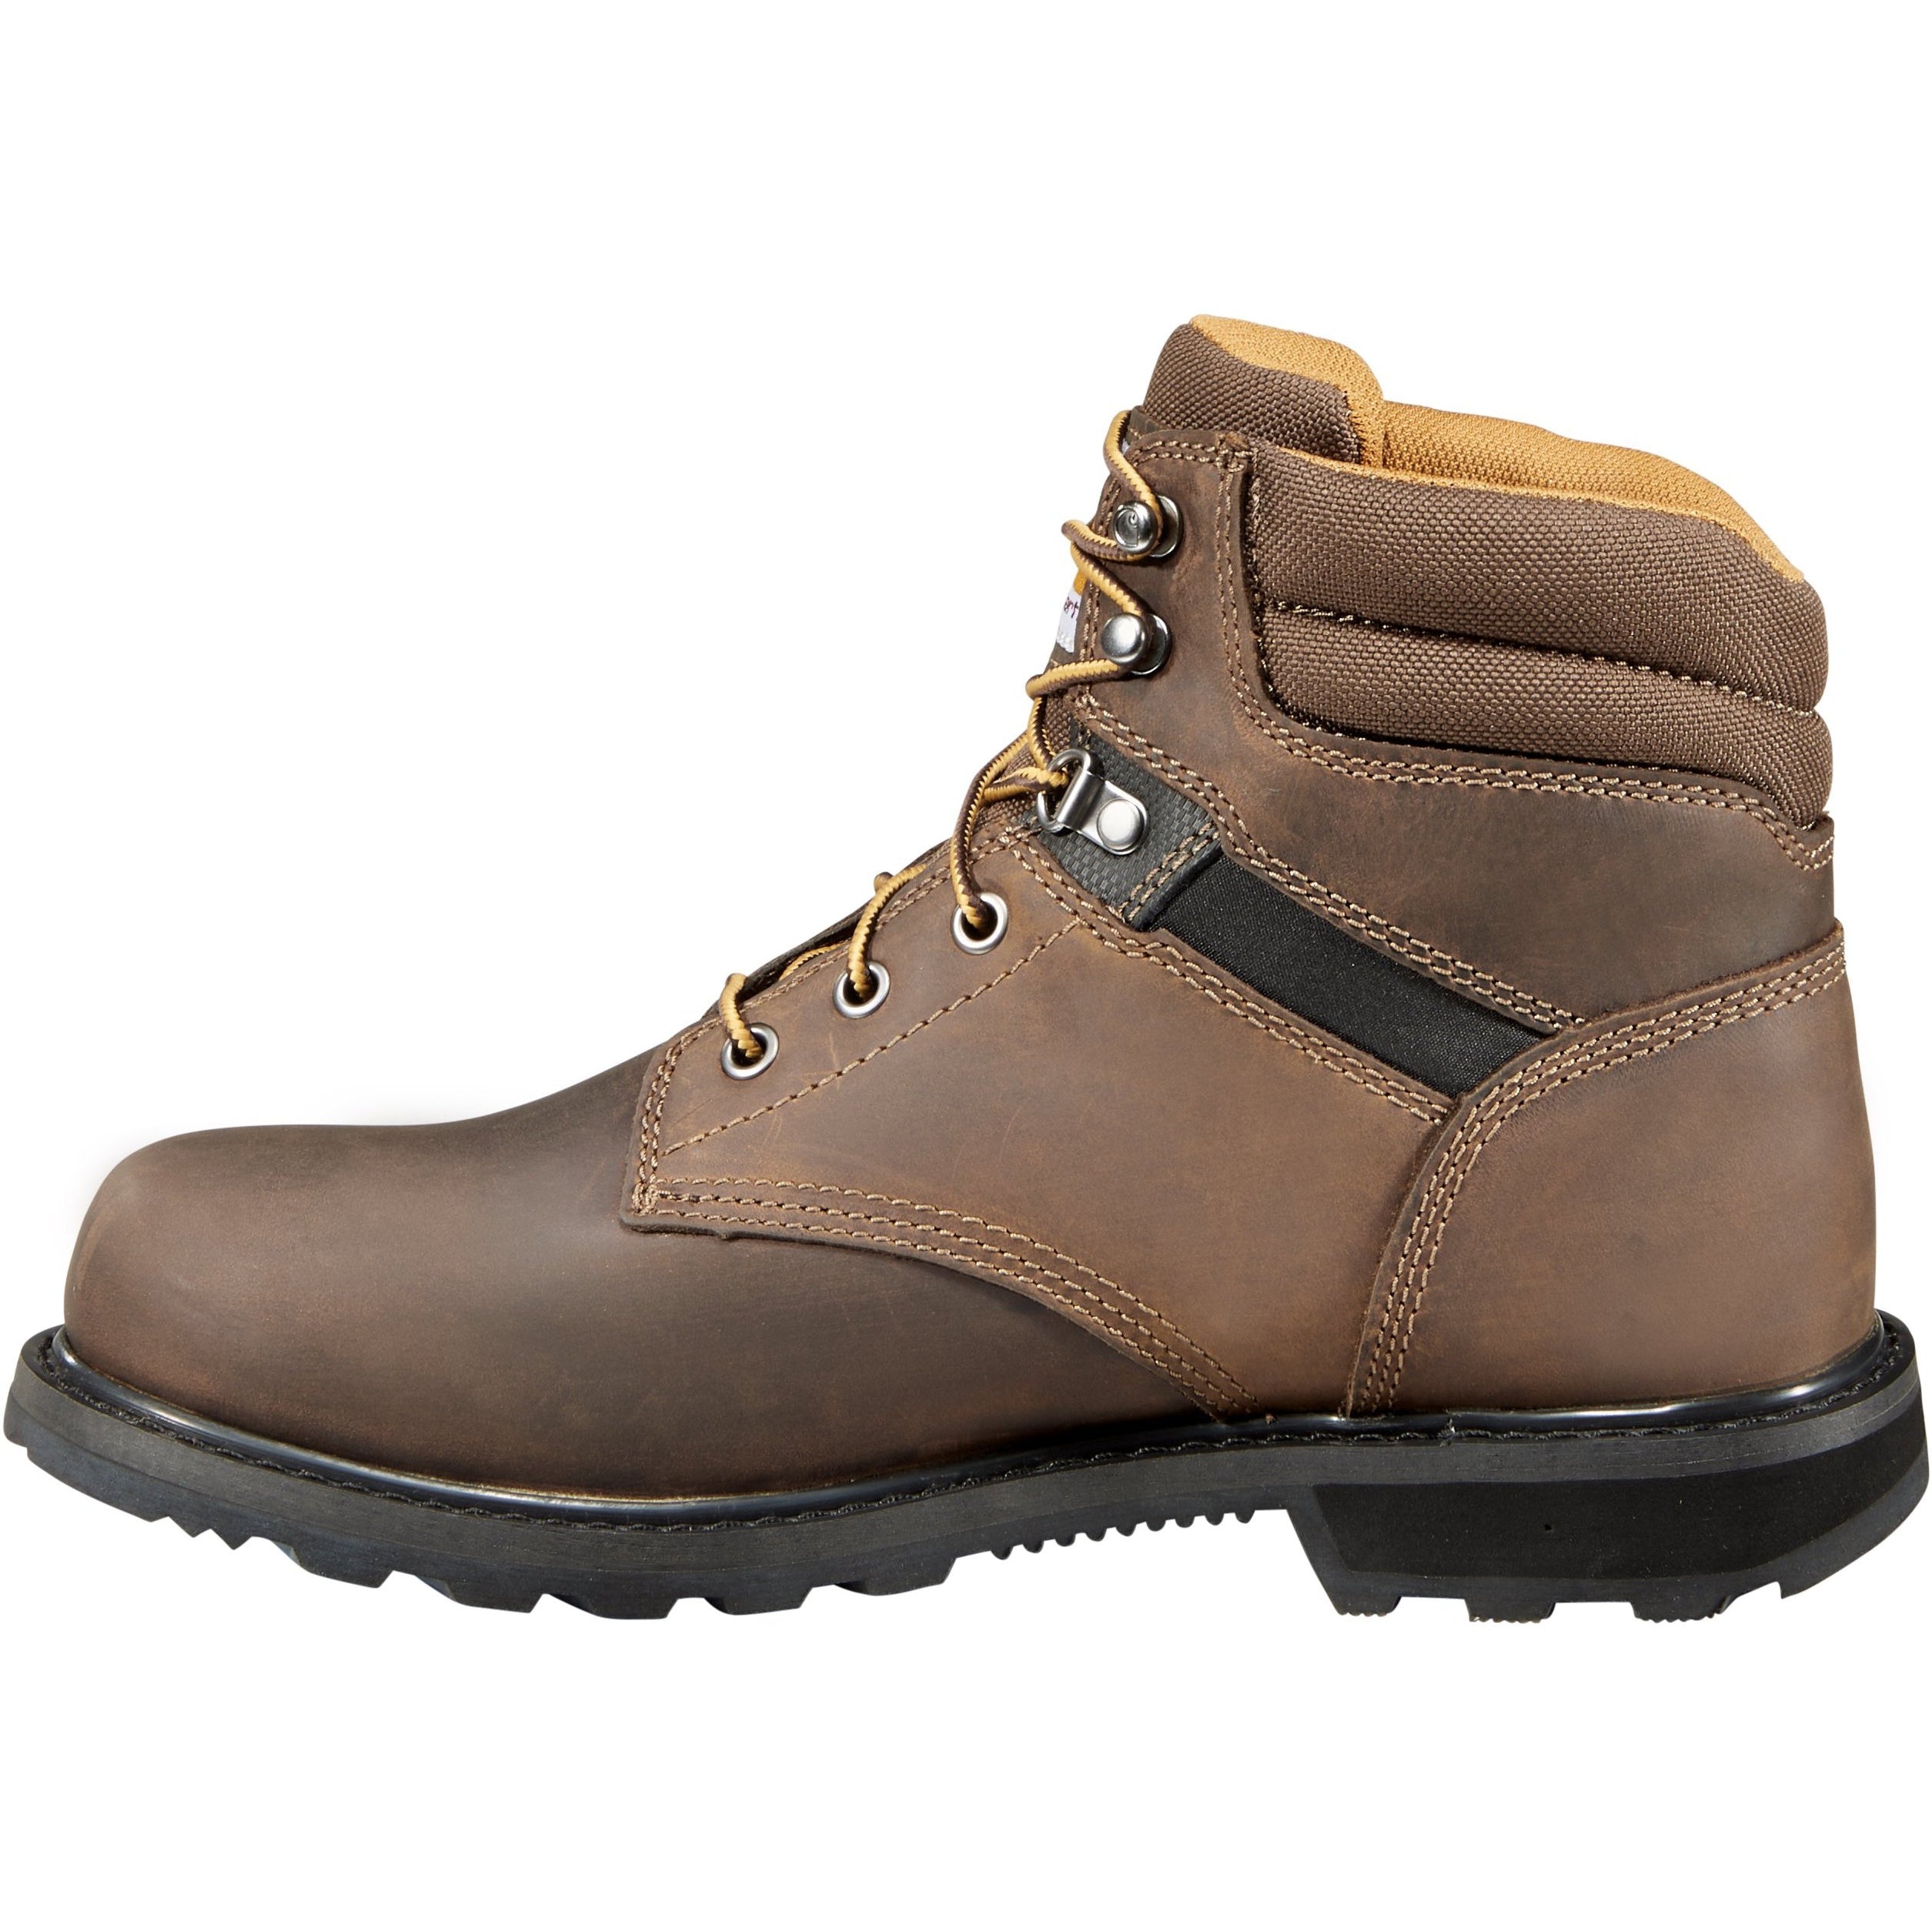 Carhartt Men's 6" Soft Toe Work Boot - Brown - CMW6174  - Overlook Boots